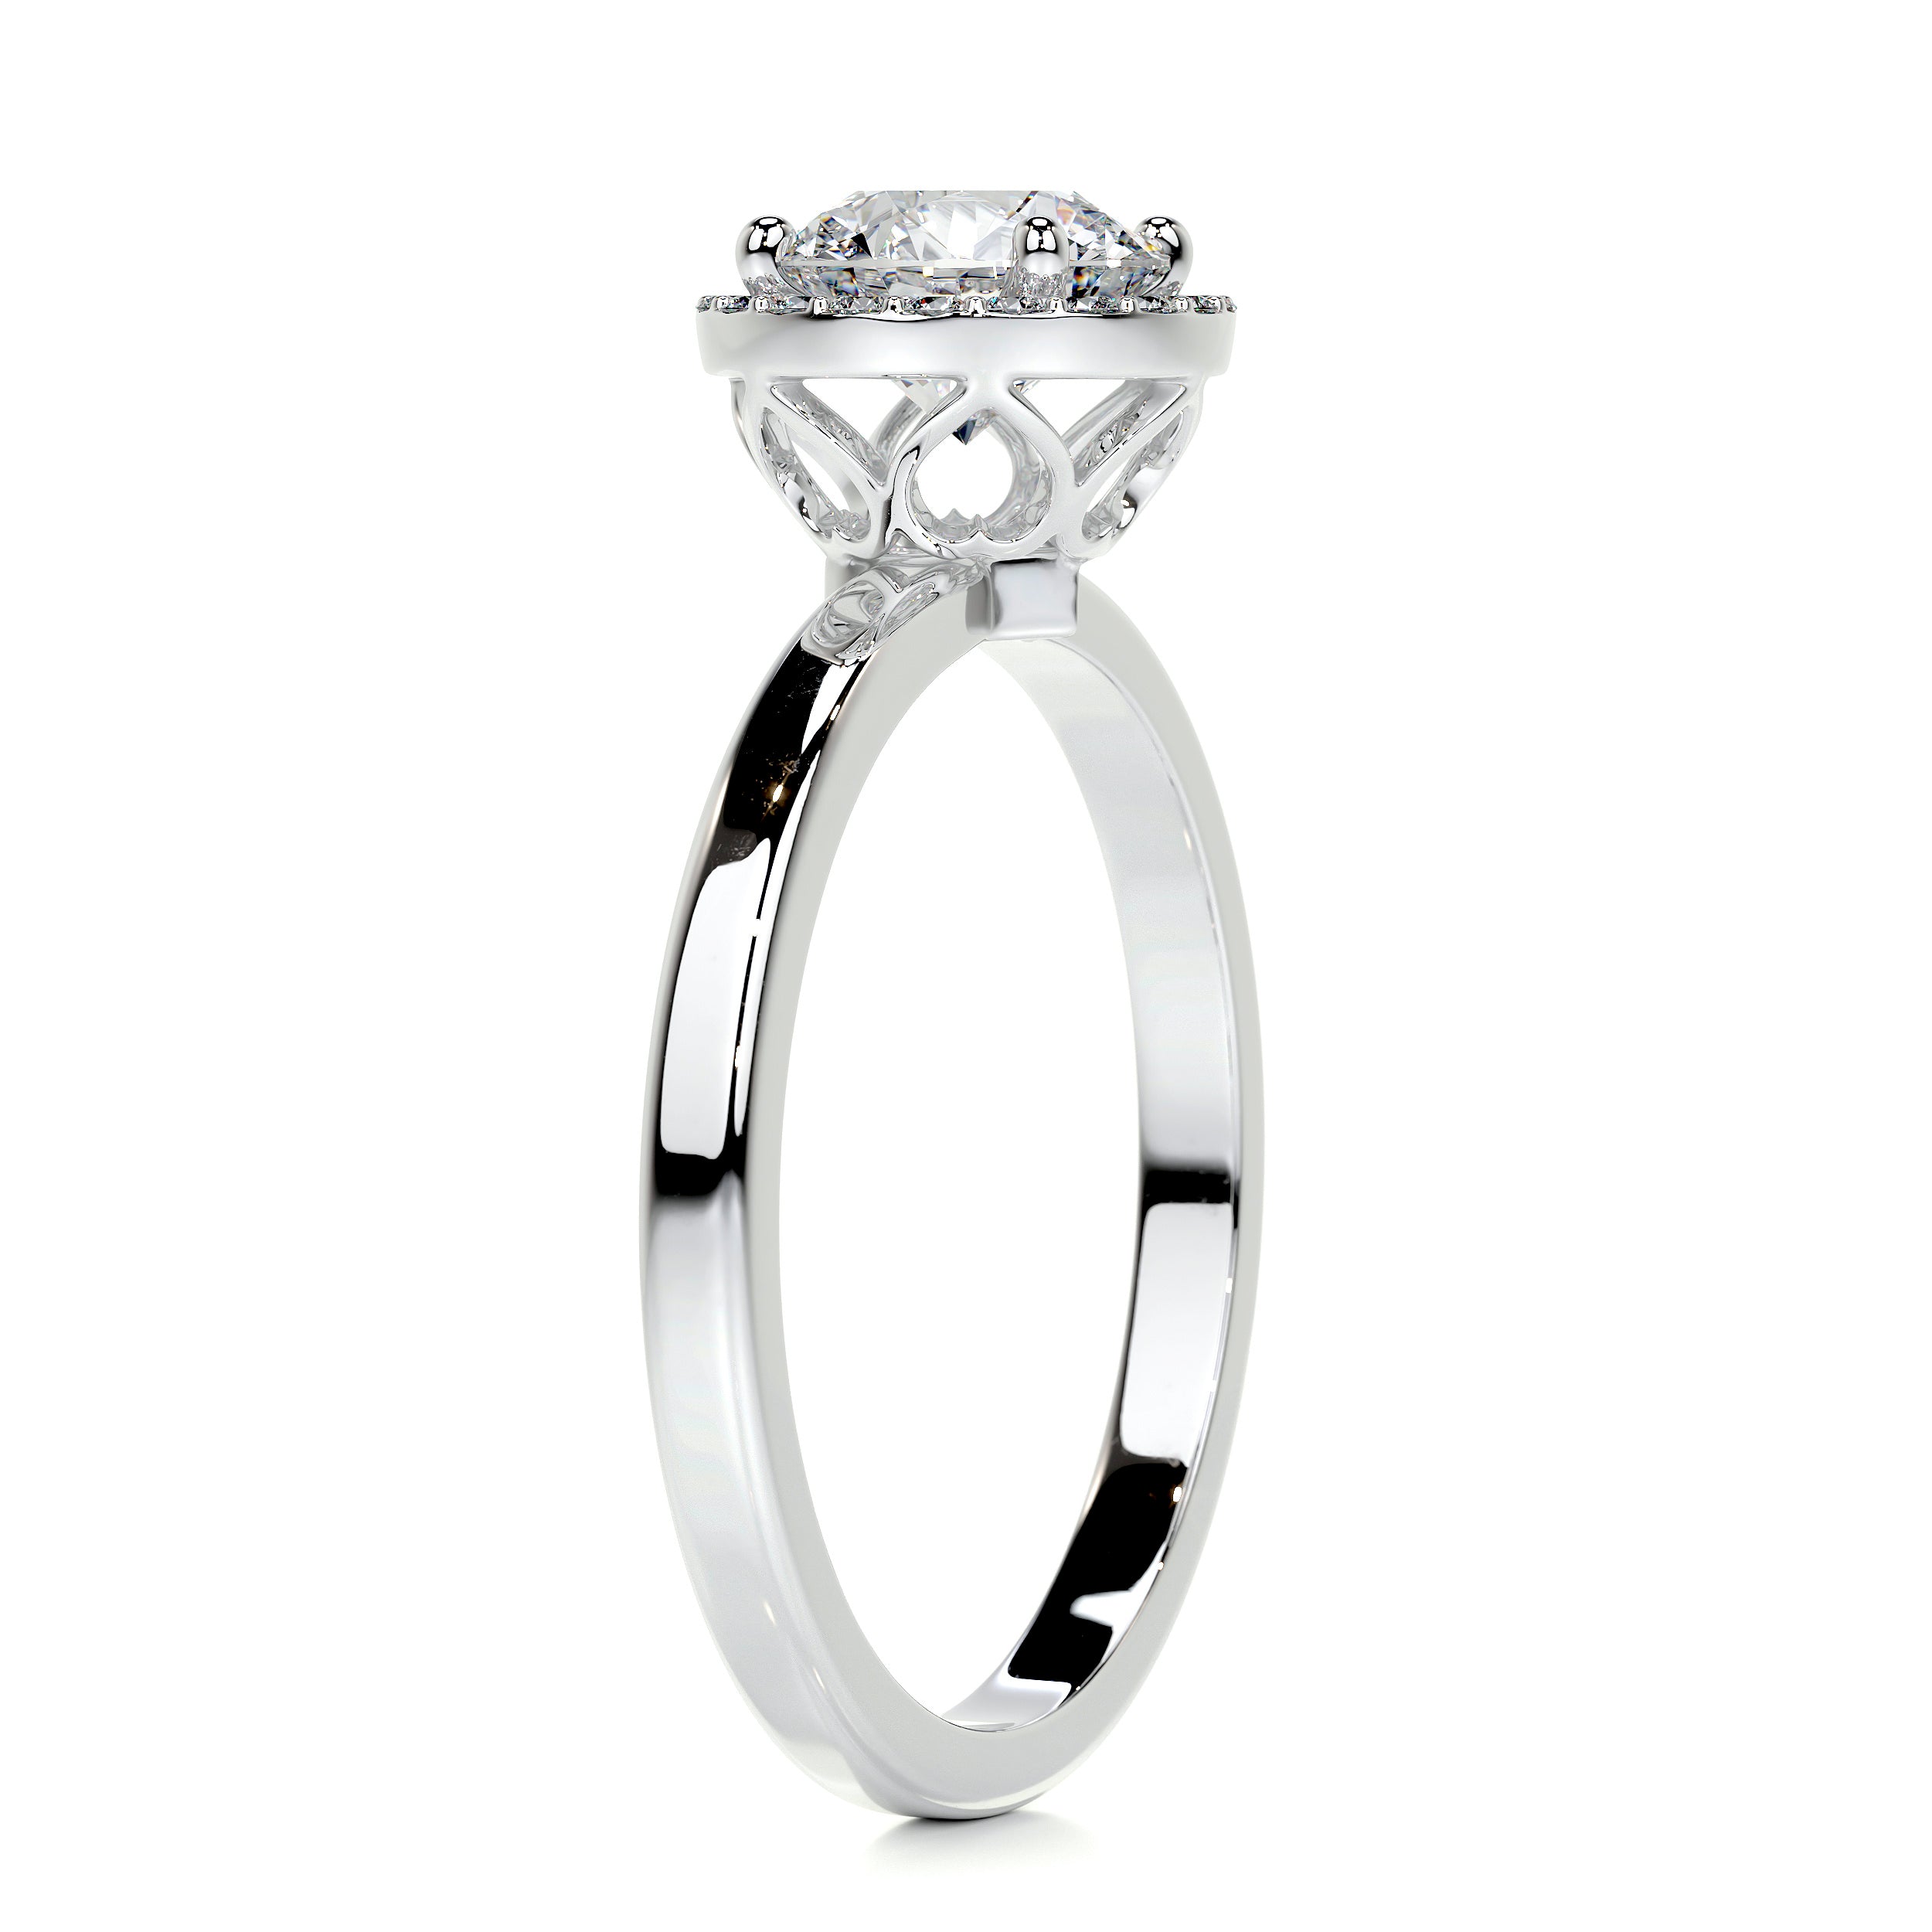 Anne Moissanite & Diamonds Ring   (1.10 Carat) -18K White Gold